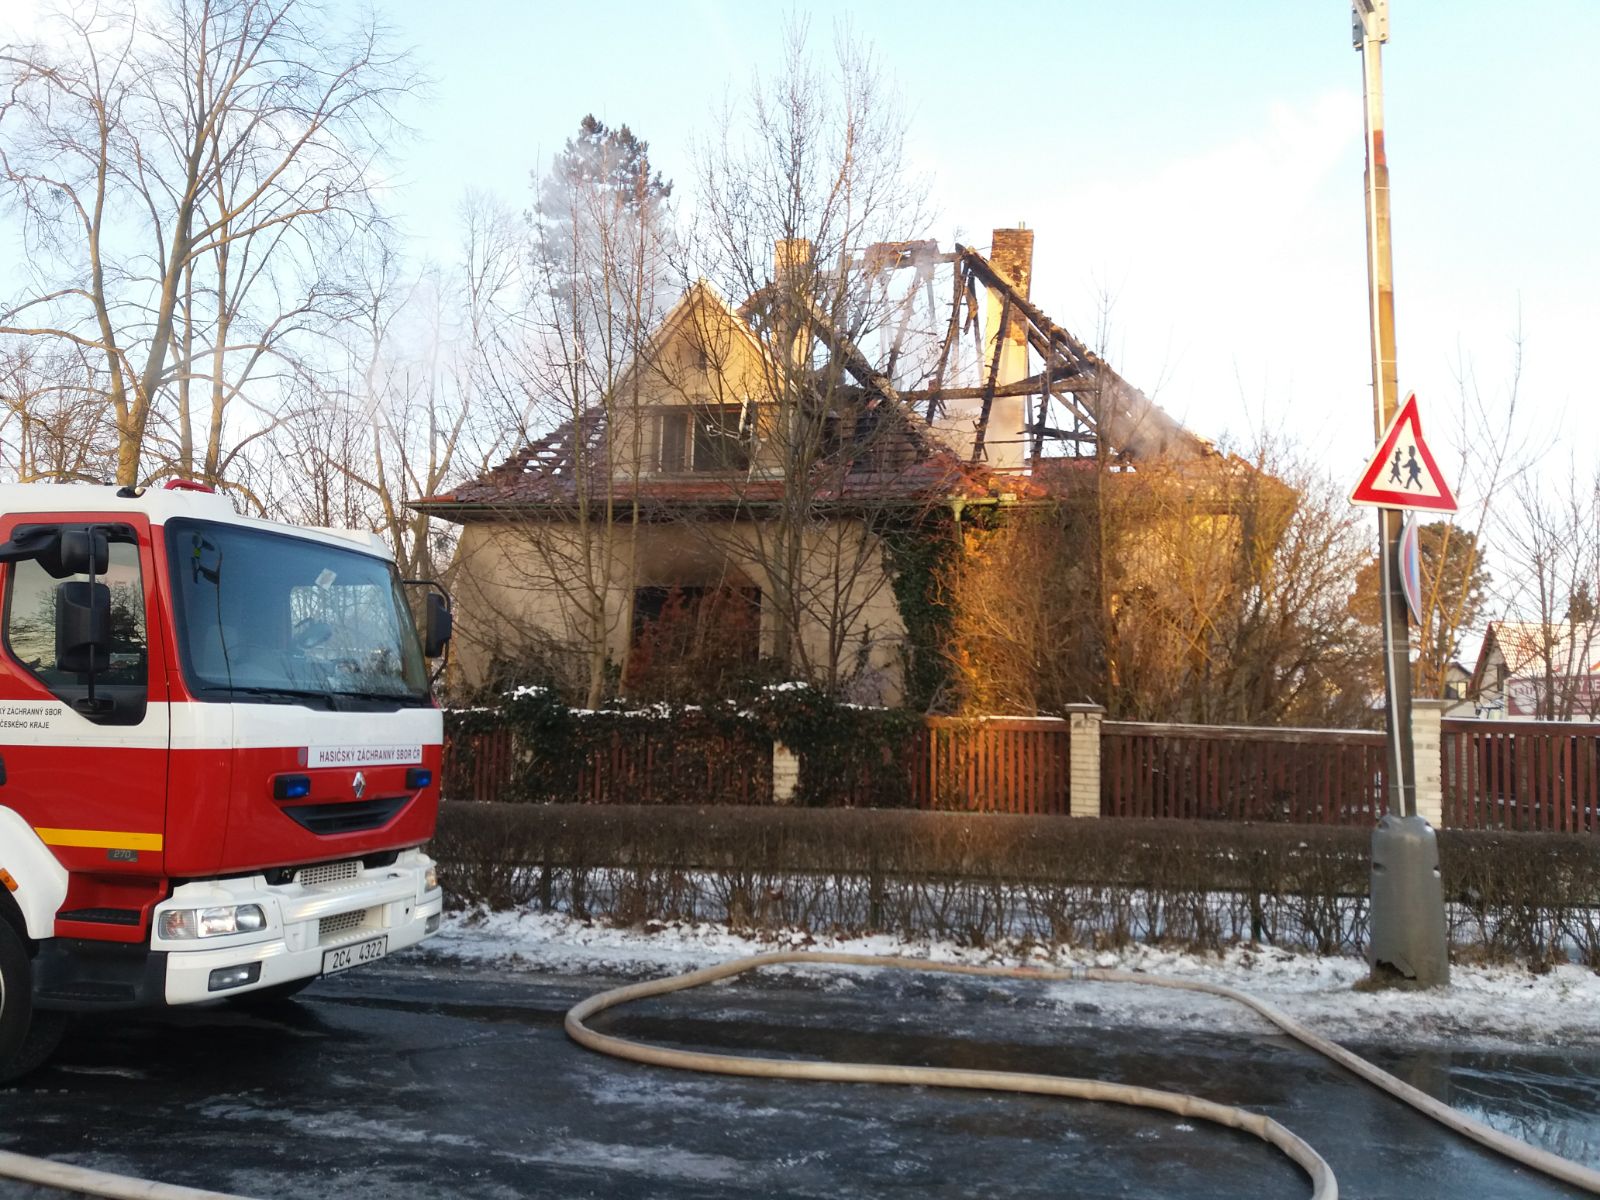 Požár domu, Čimelice - 19. 2. 2018 (3).jpg